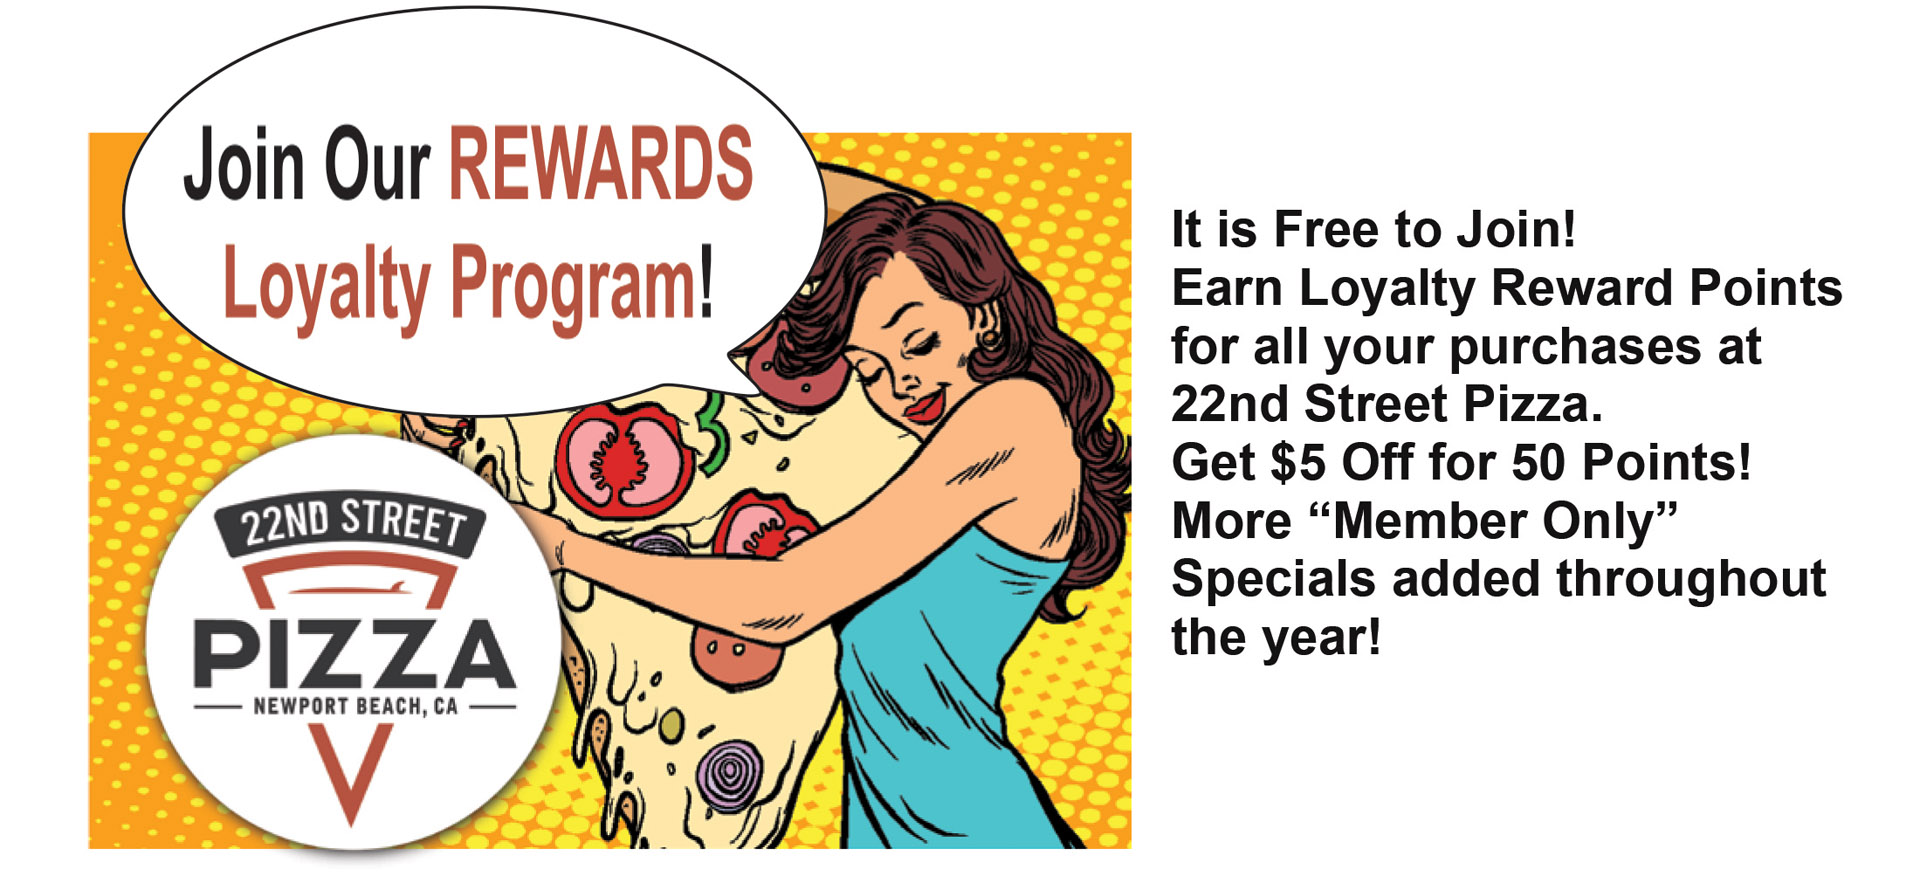 22nd Street Pizza Loyalty Program